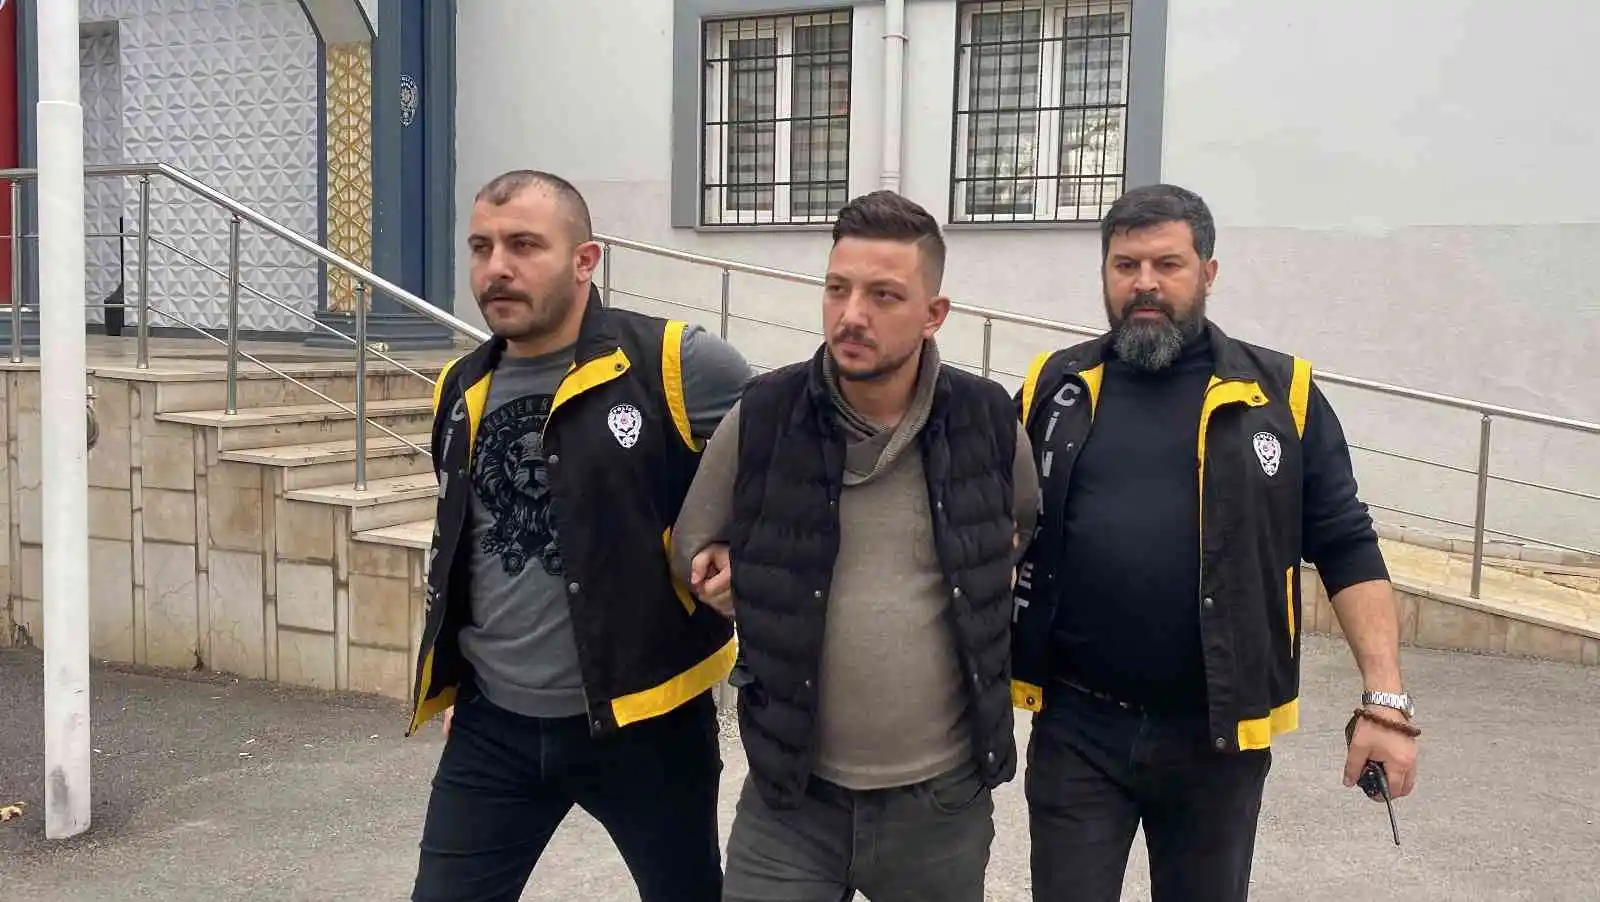 Bursa’da hobi bahçesinde 2 kişiyi öldüren zanlı tutuklandı
